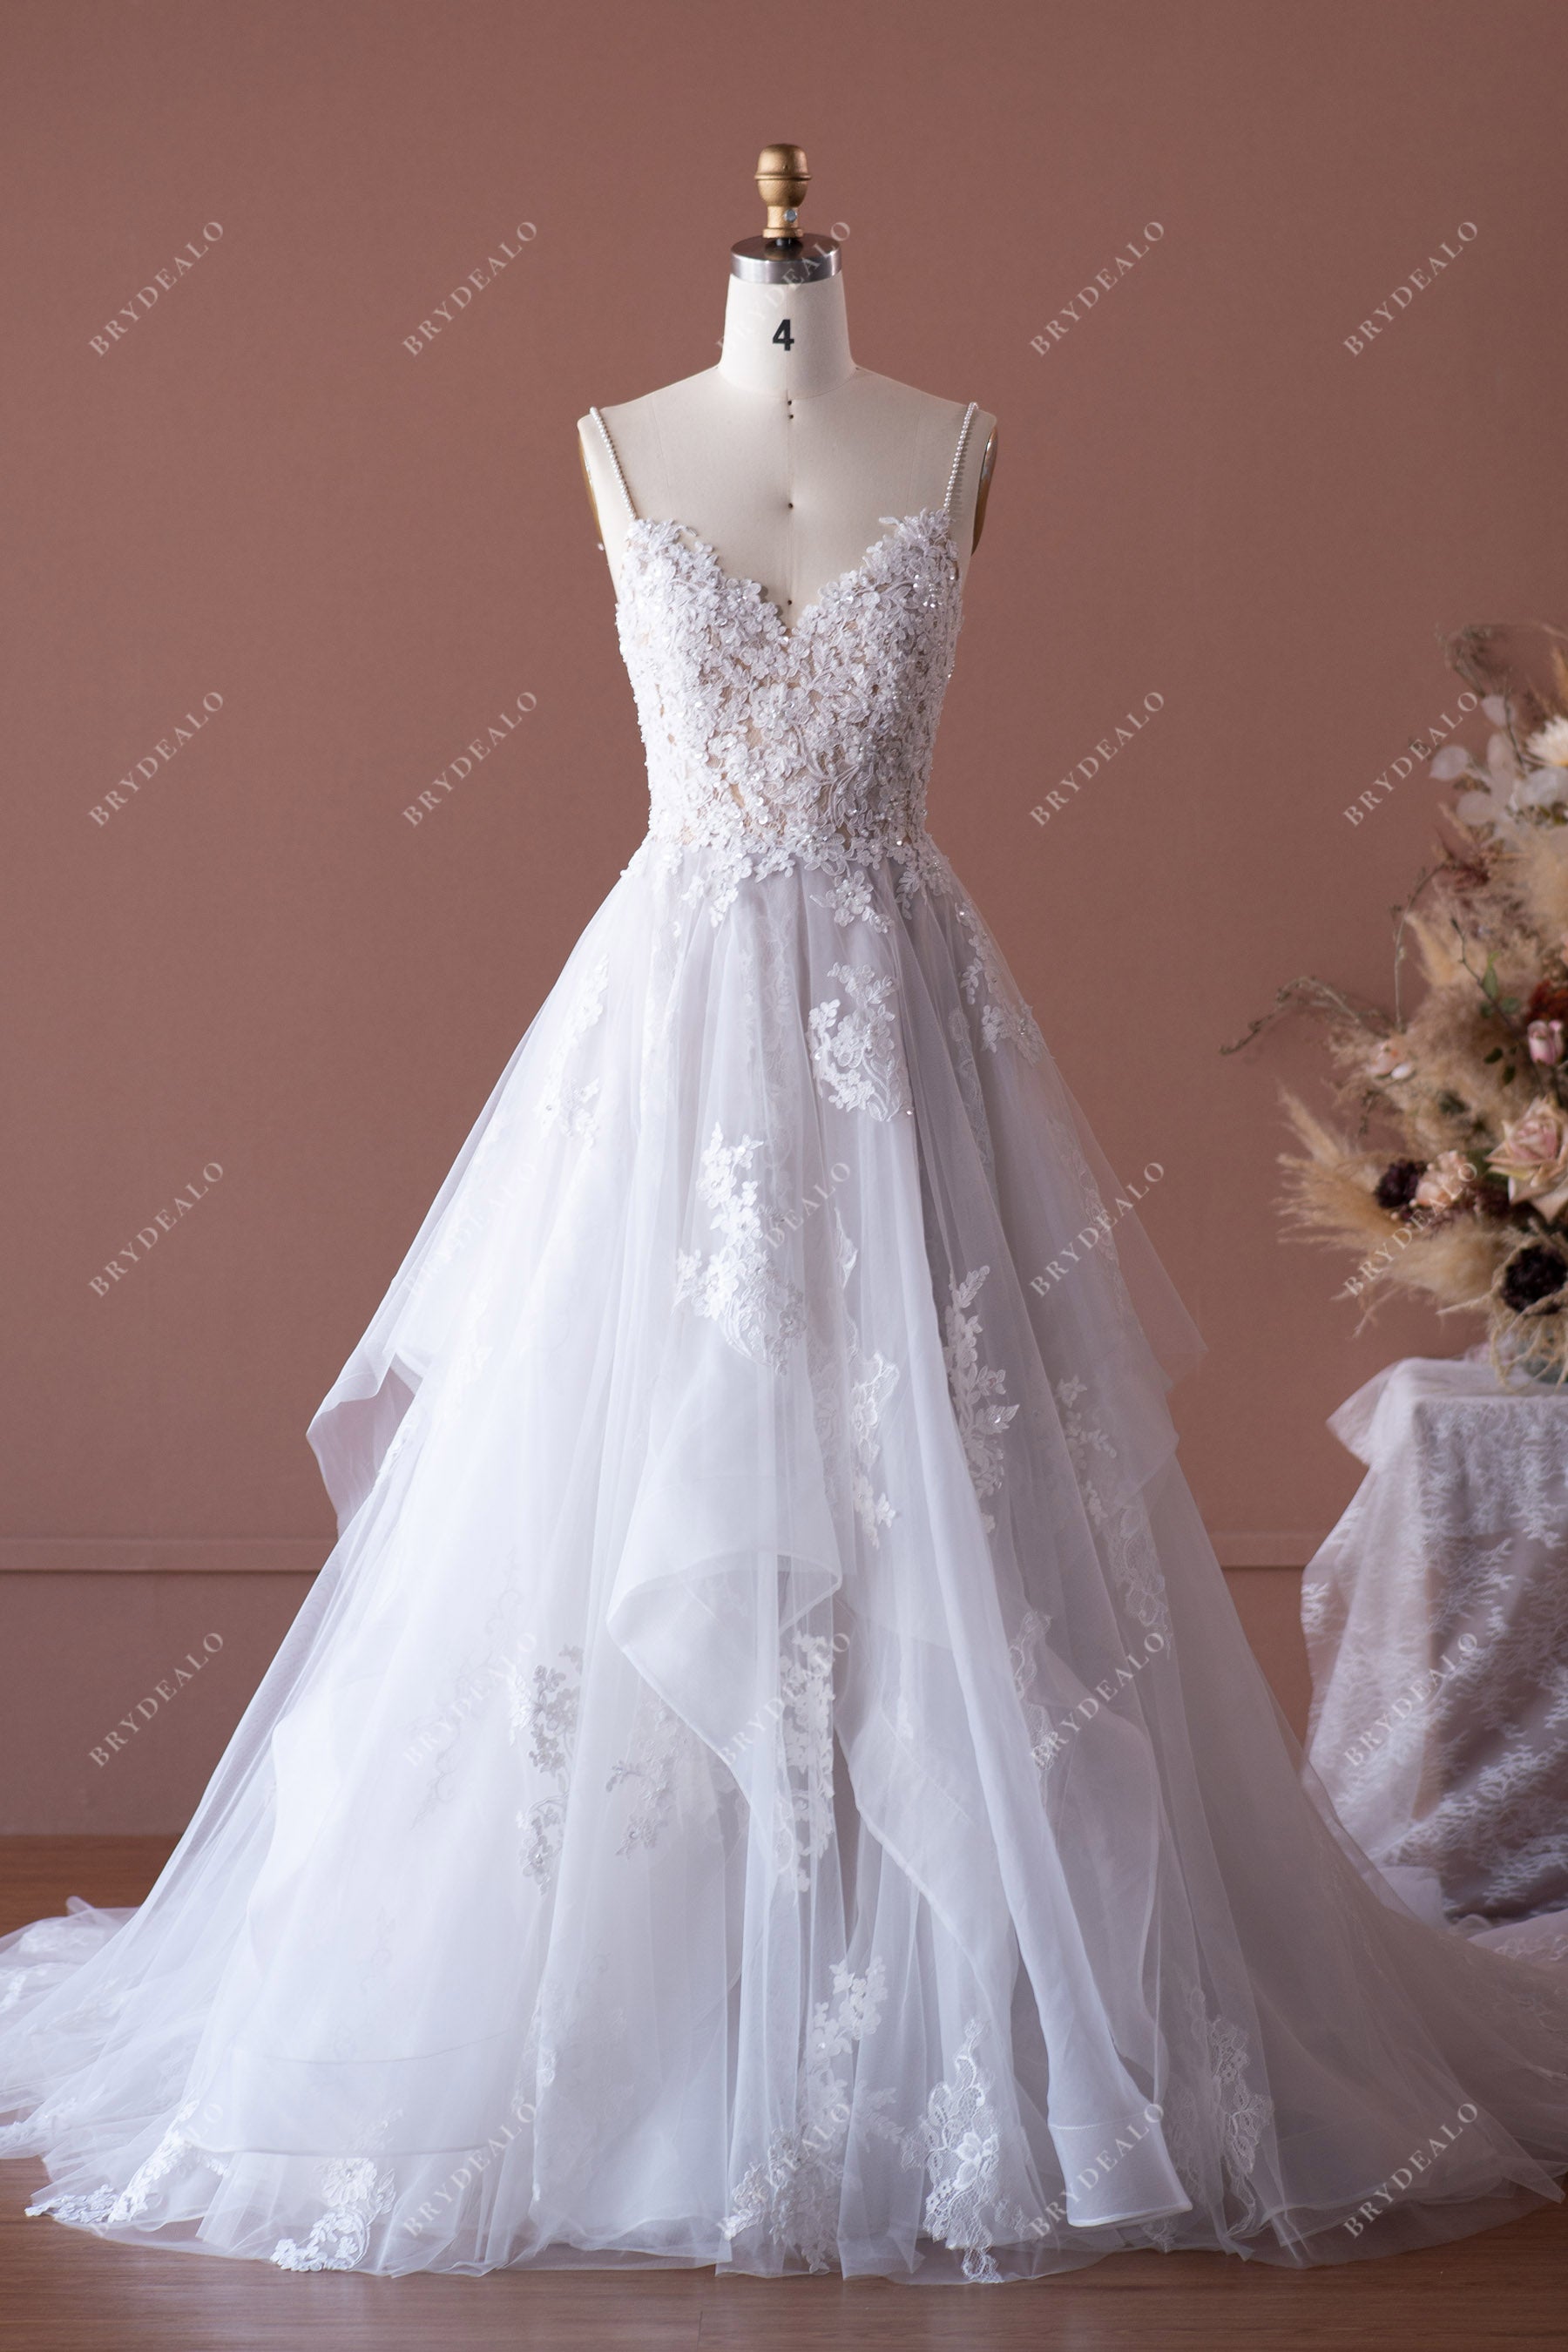 Spaghetti Strap Lace Puffy Ruffled Wedding Dress